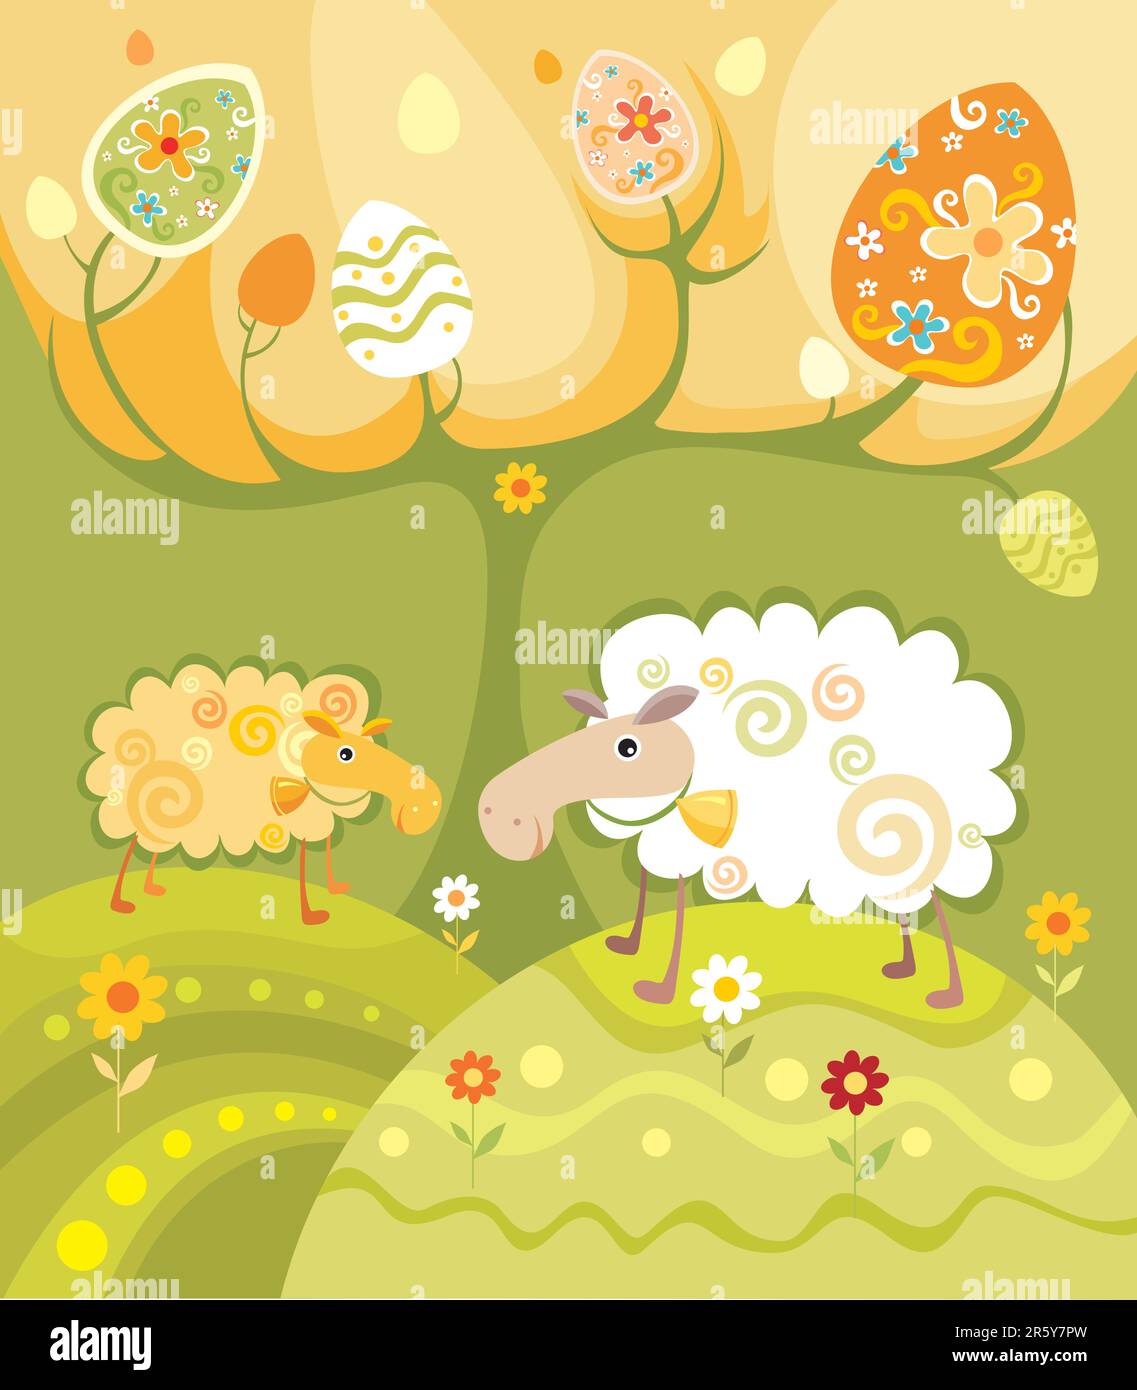 illustrazione di pasqua con due divertenti pecore decorative Illustrazione Vettoriale